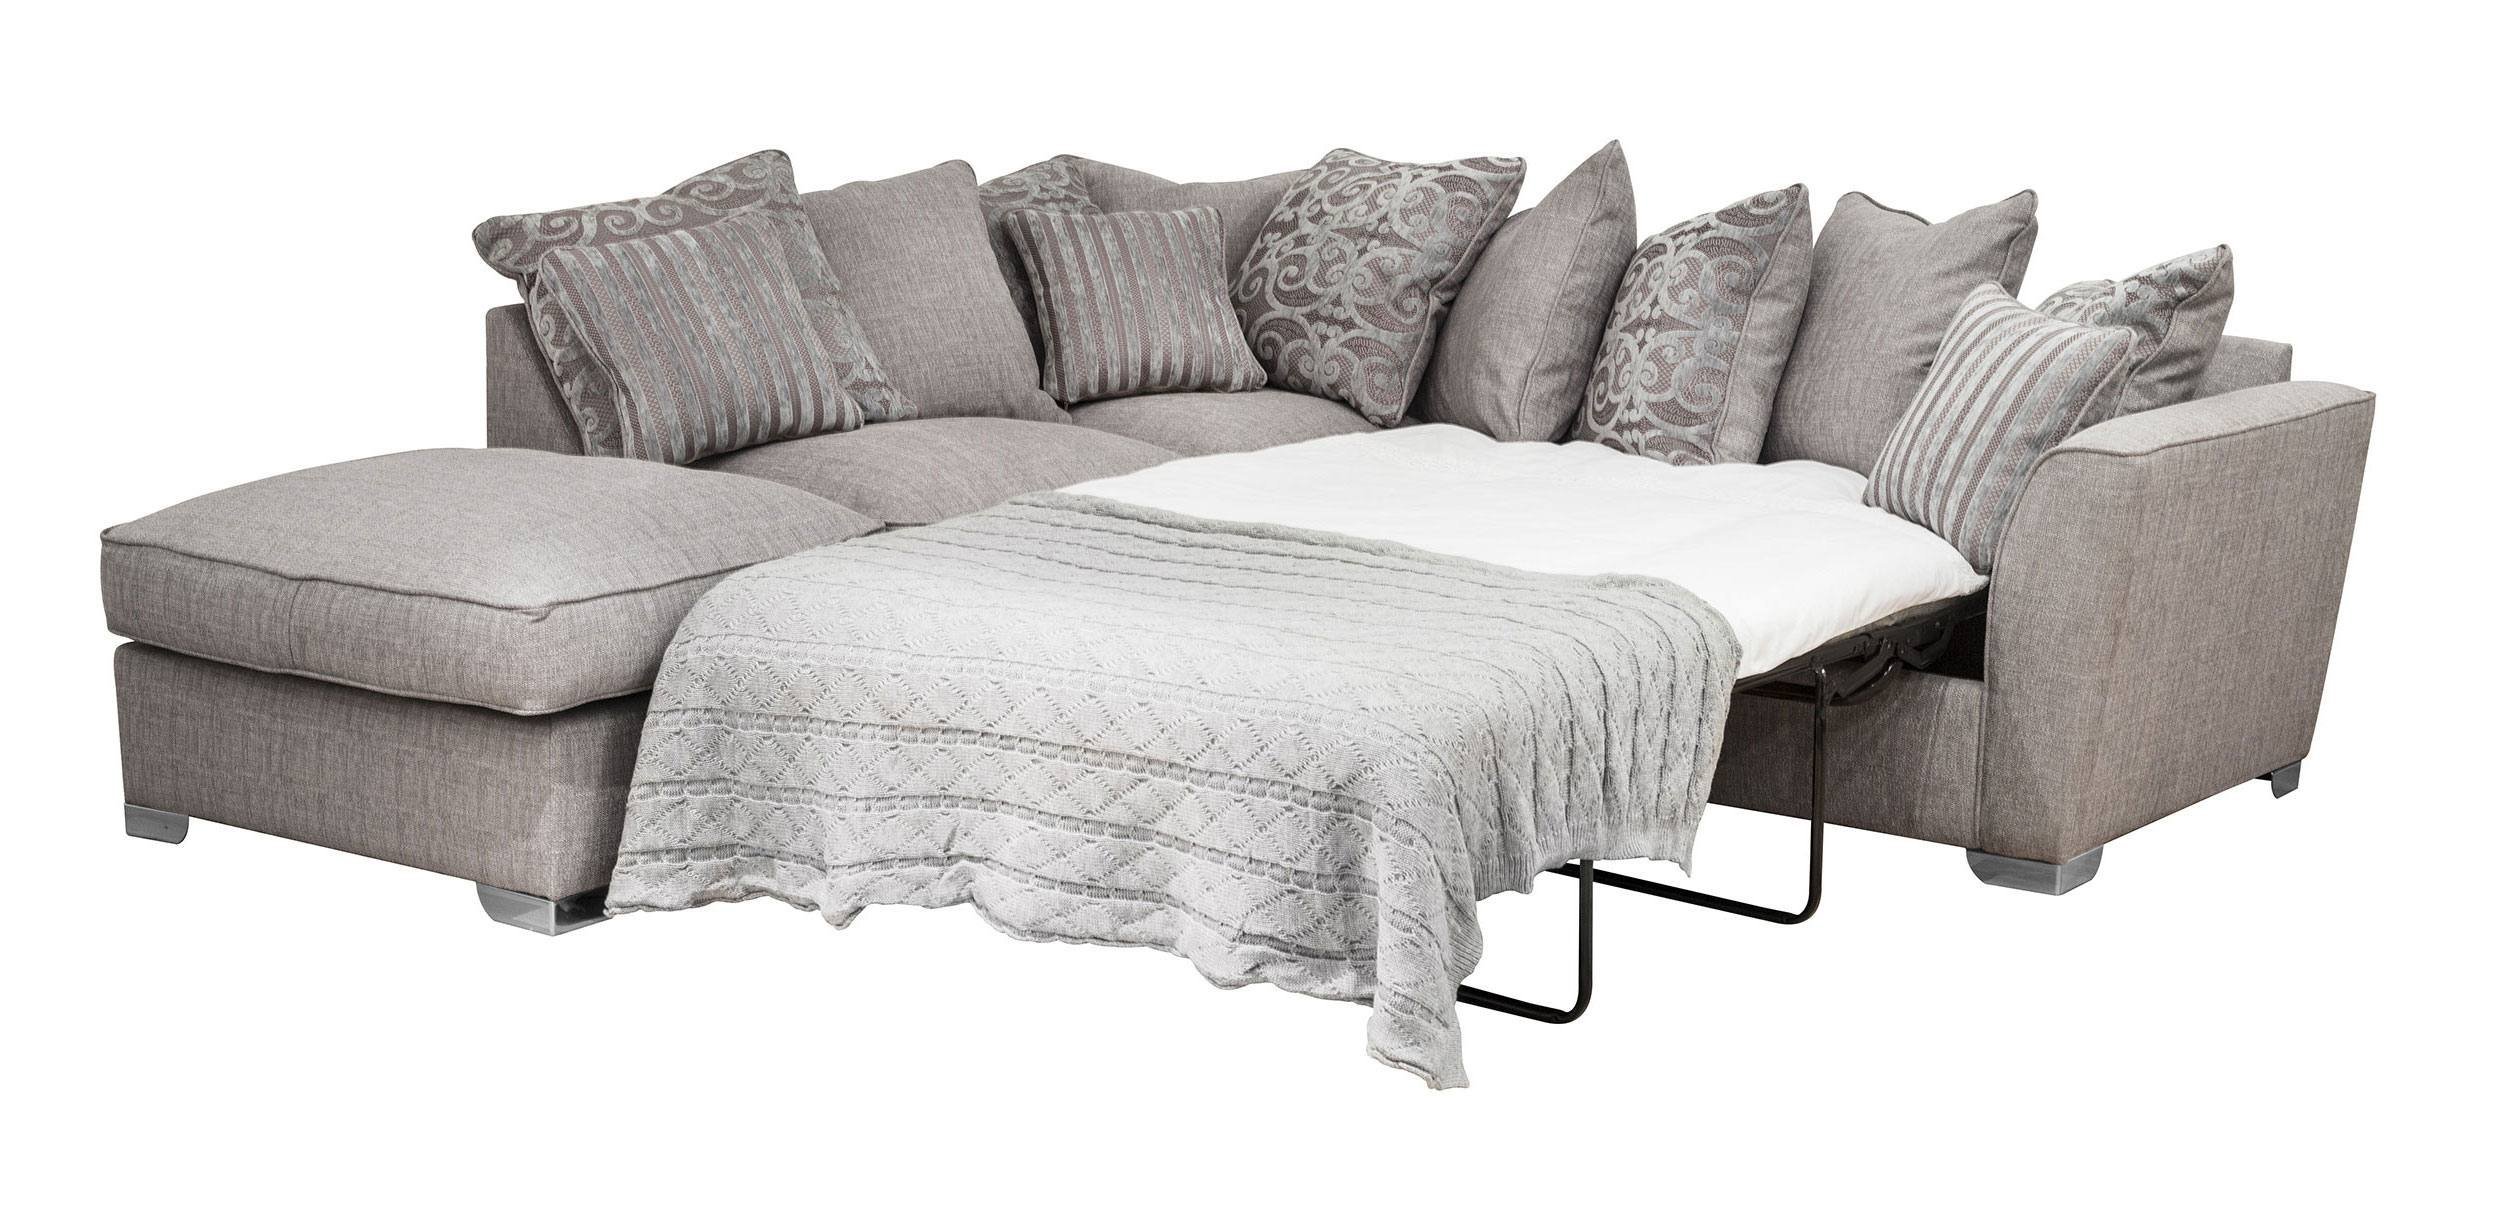 sofa bed deals dublin